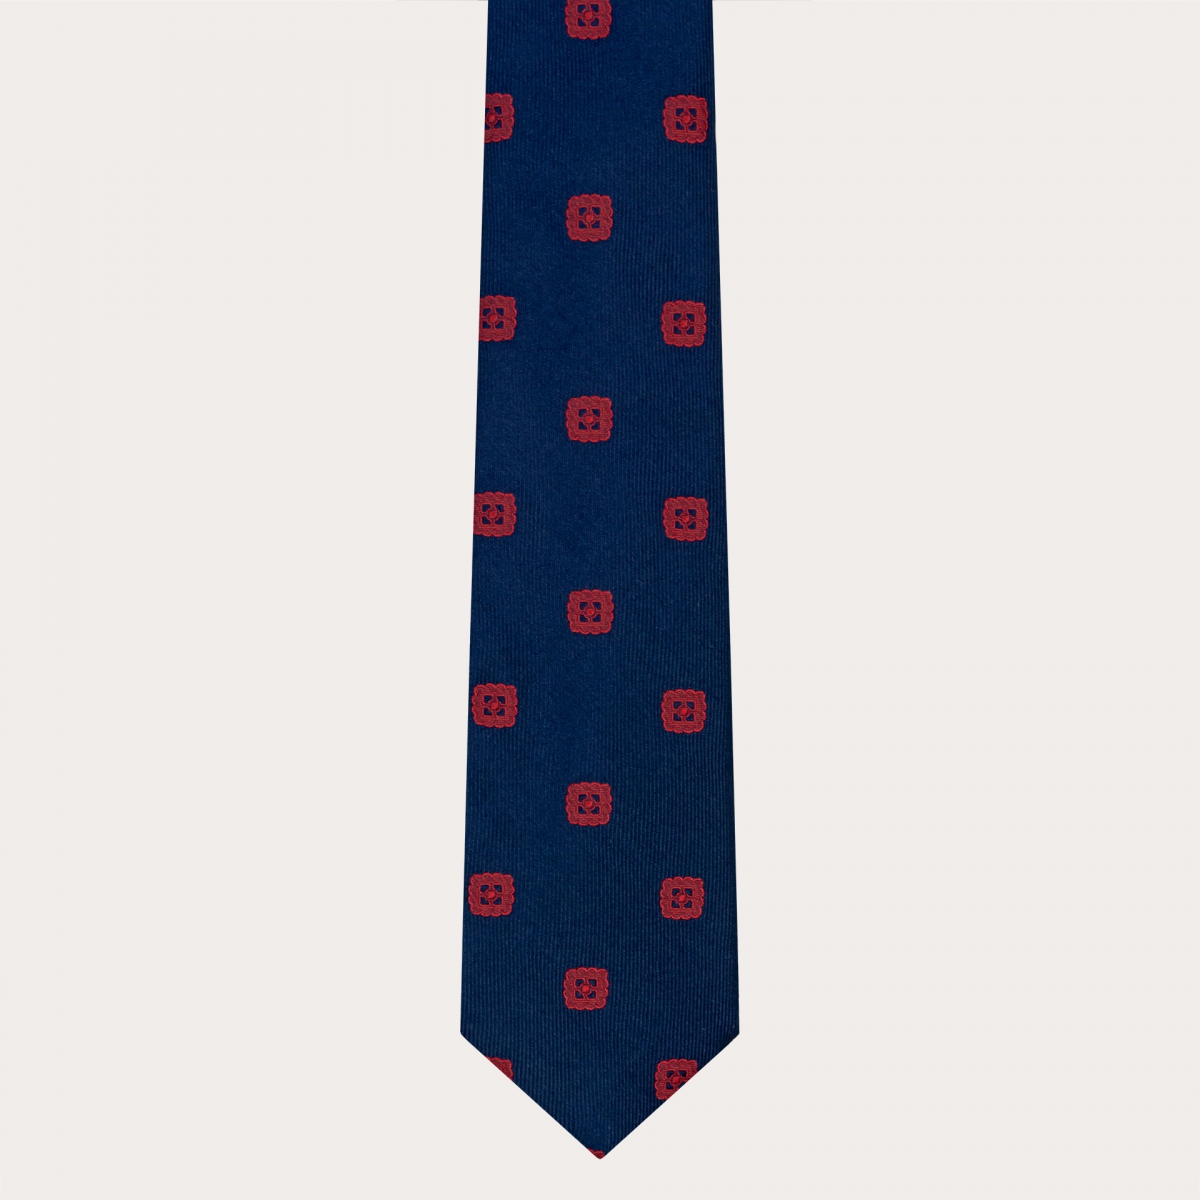 Corbata elegante en jacquard de seda azul con bordado rojo